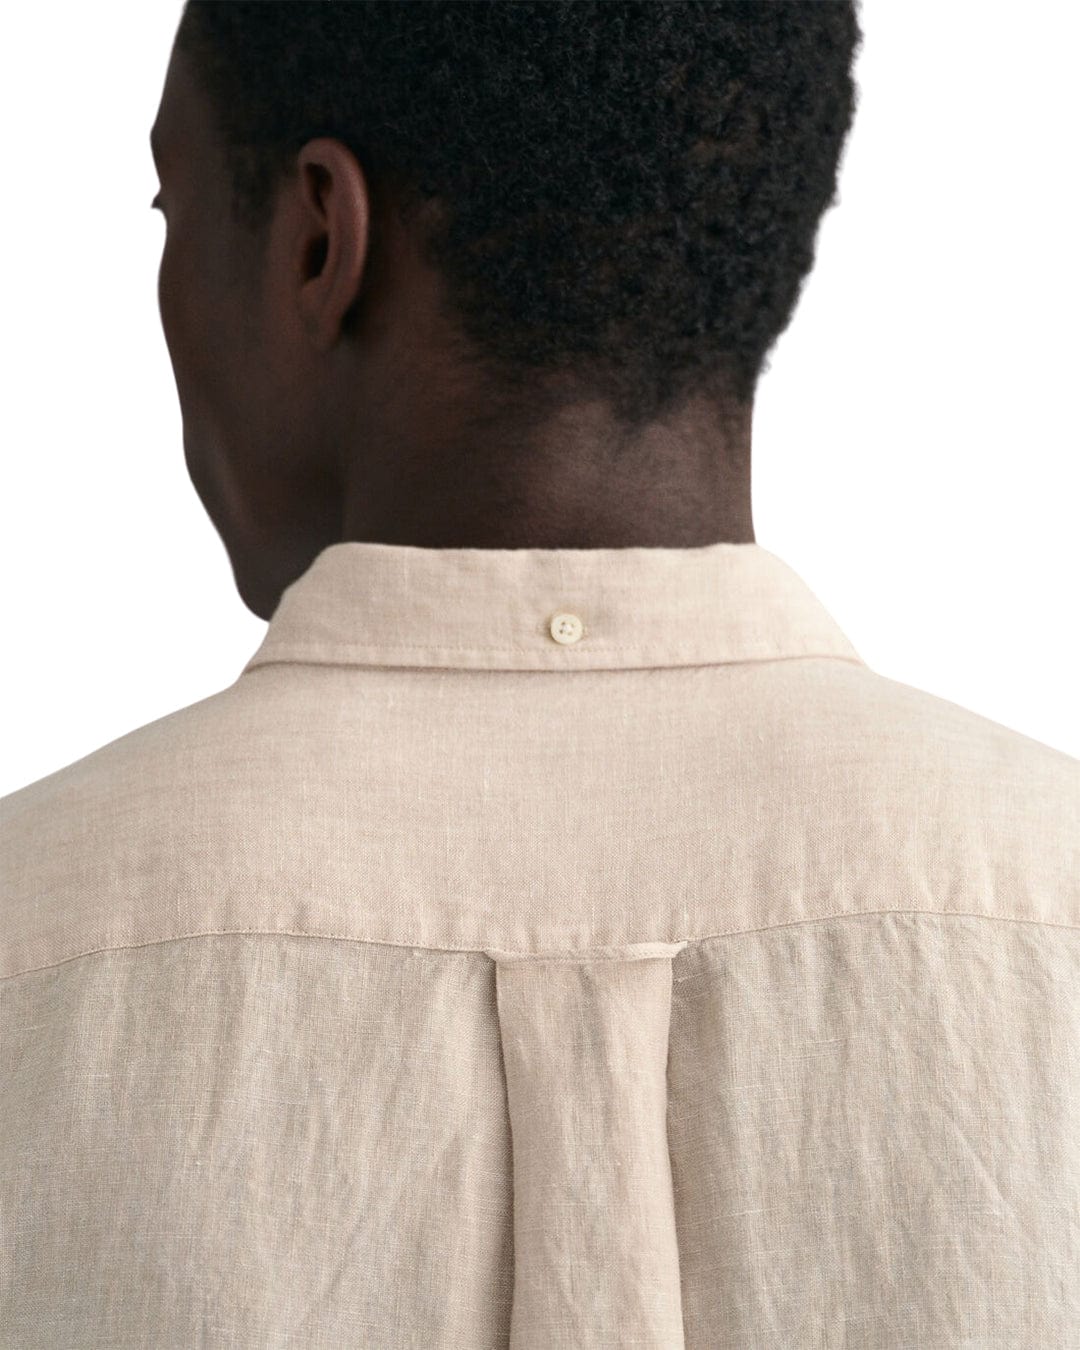 Gant Shirts Gant Sand Regular Fit Linen Shirt